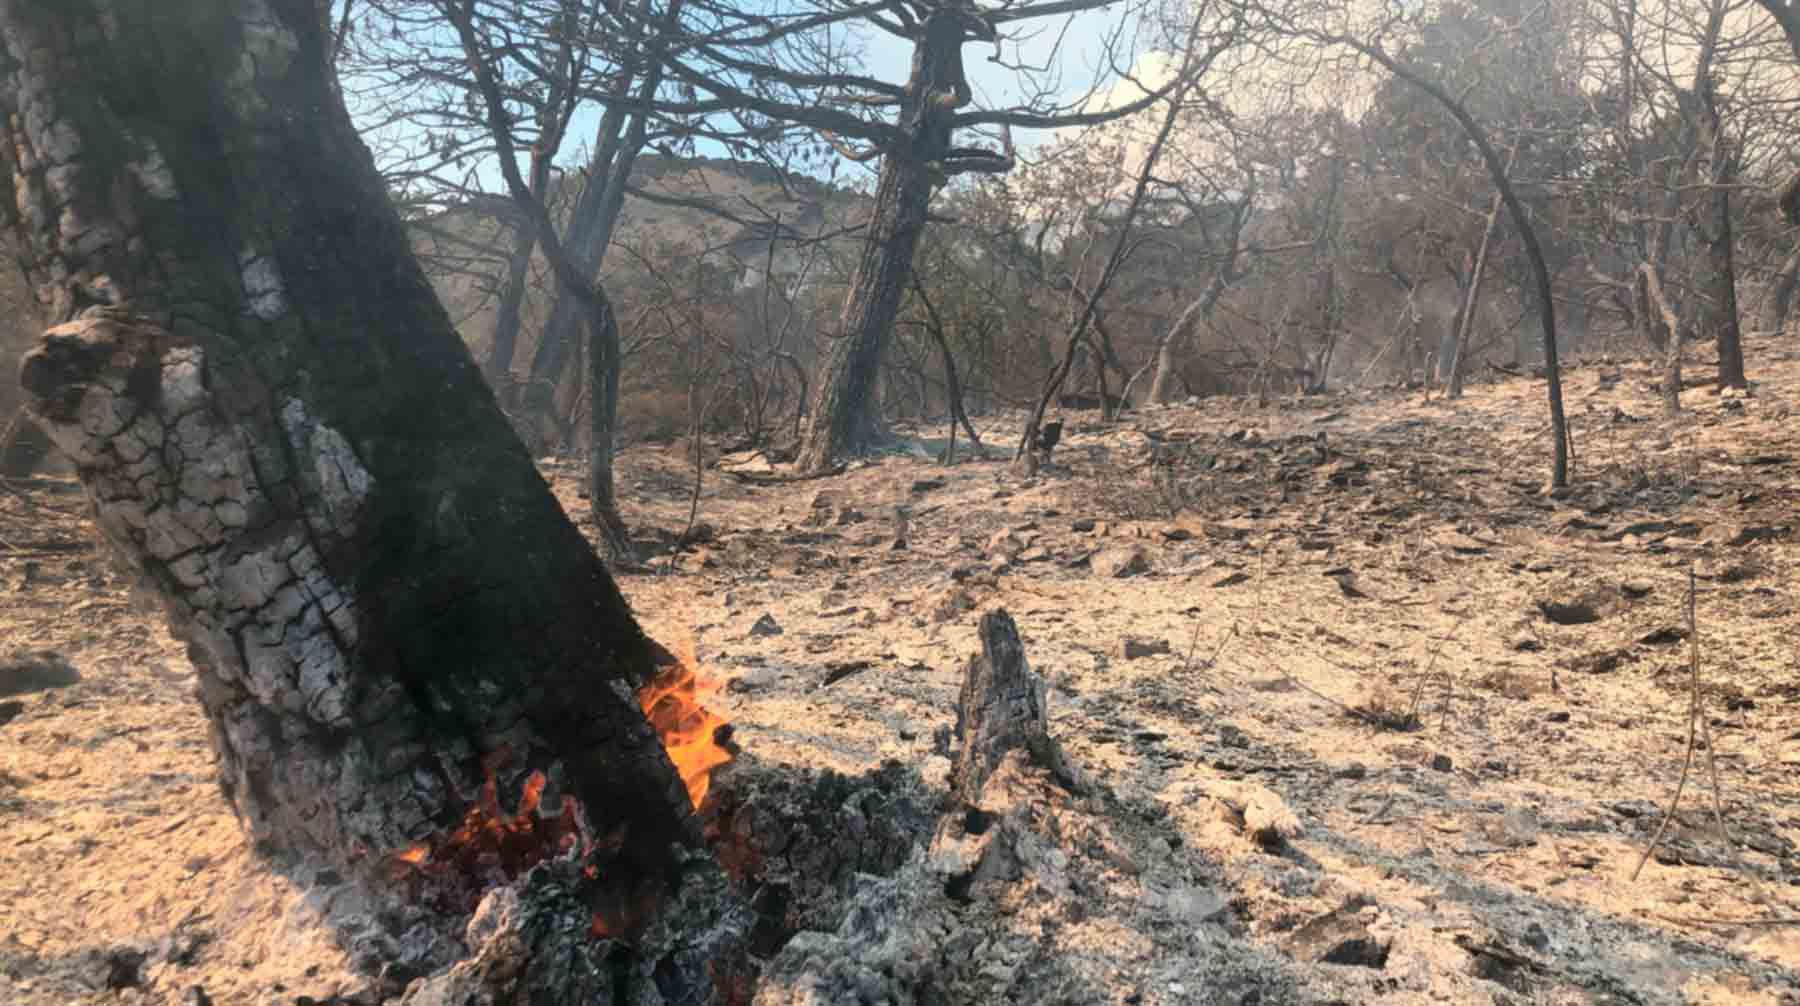 Dailystorm - Основной причиной пожара в «Утрише» стало неосторожное обращение с огнем